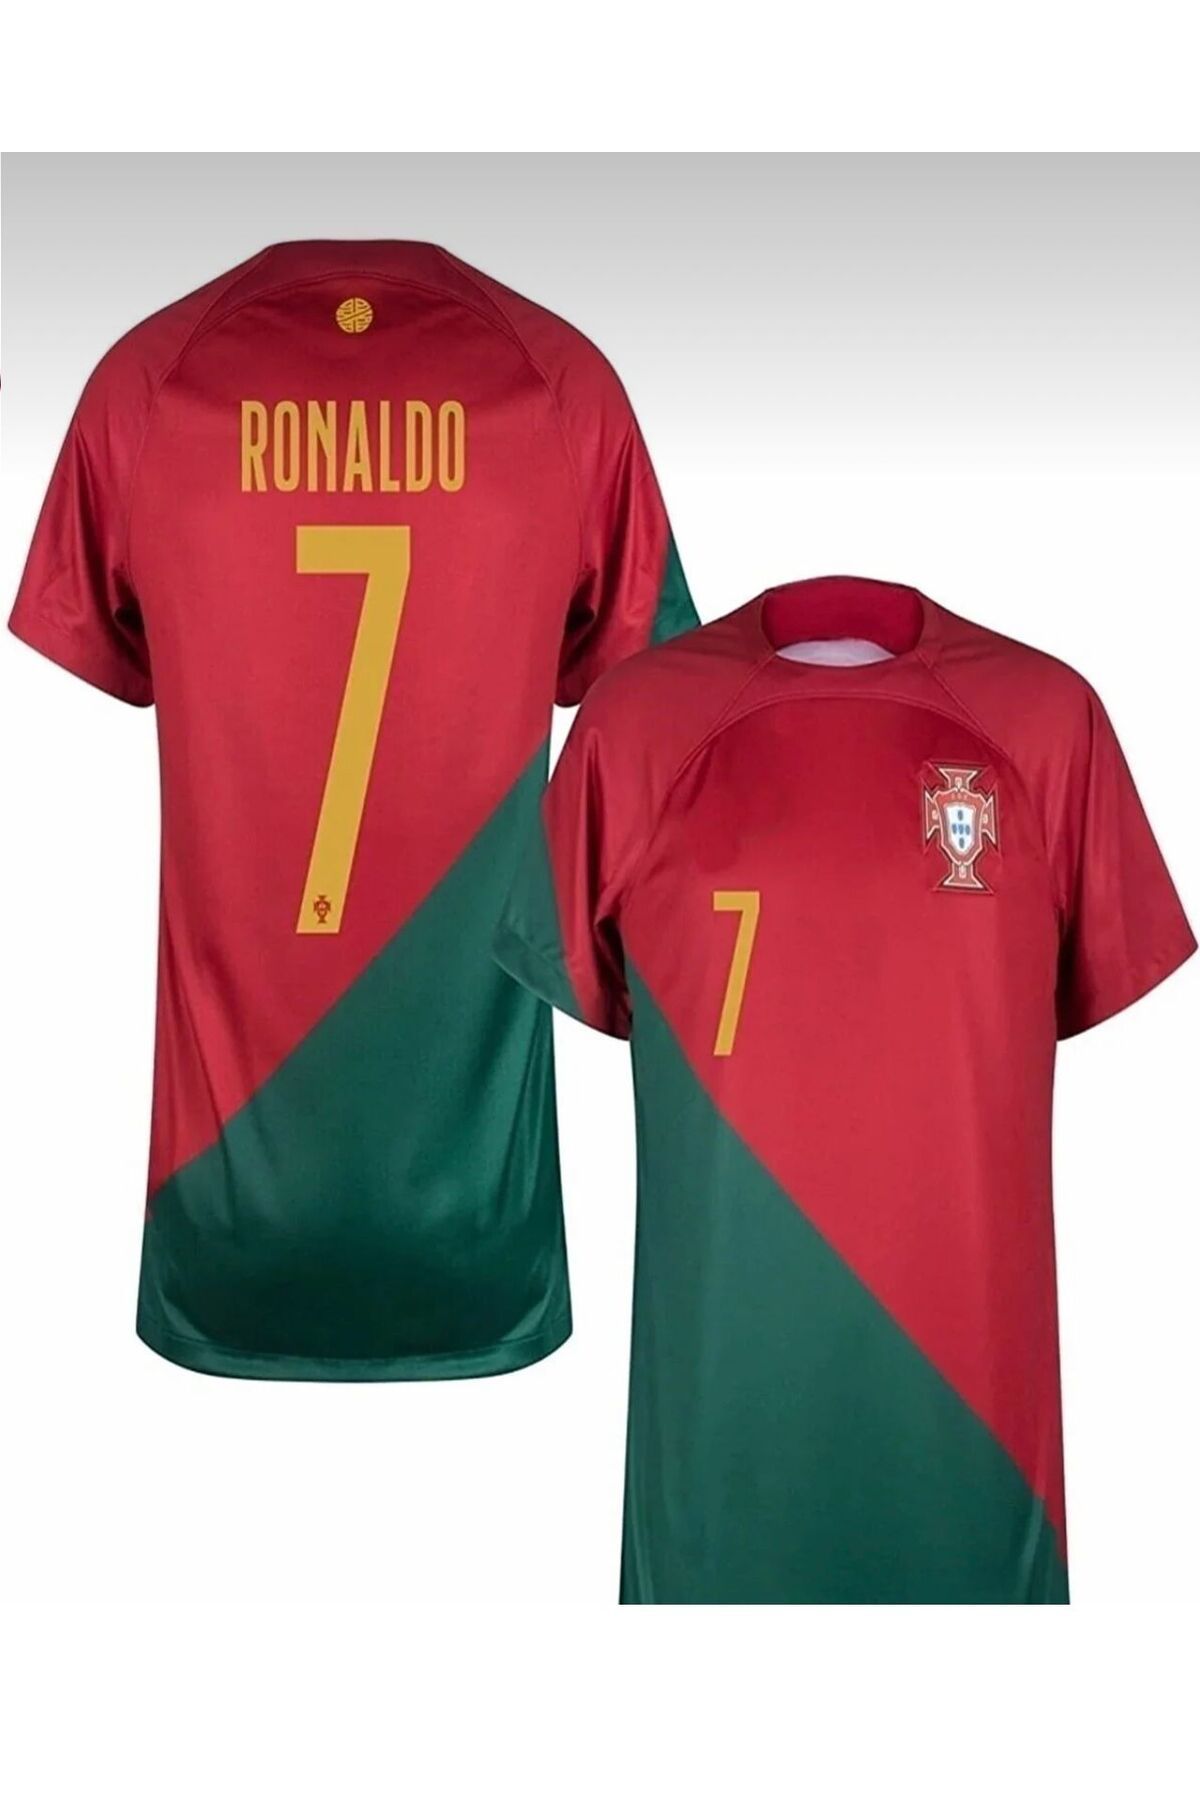 Lion Spor Portekiz Ronaldo Milli Takım Dünya Kupası Iç Saha Yetişkin Forma 2022 Ronaldo Bordo-yeşil Portekiz